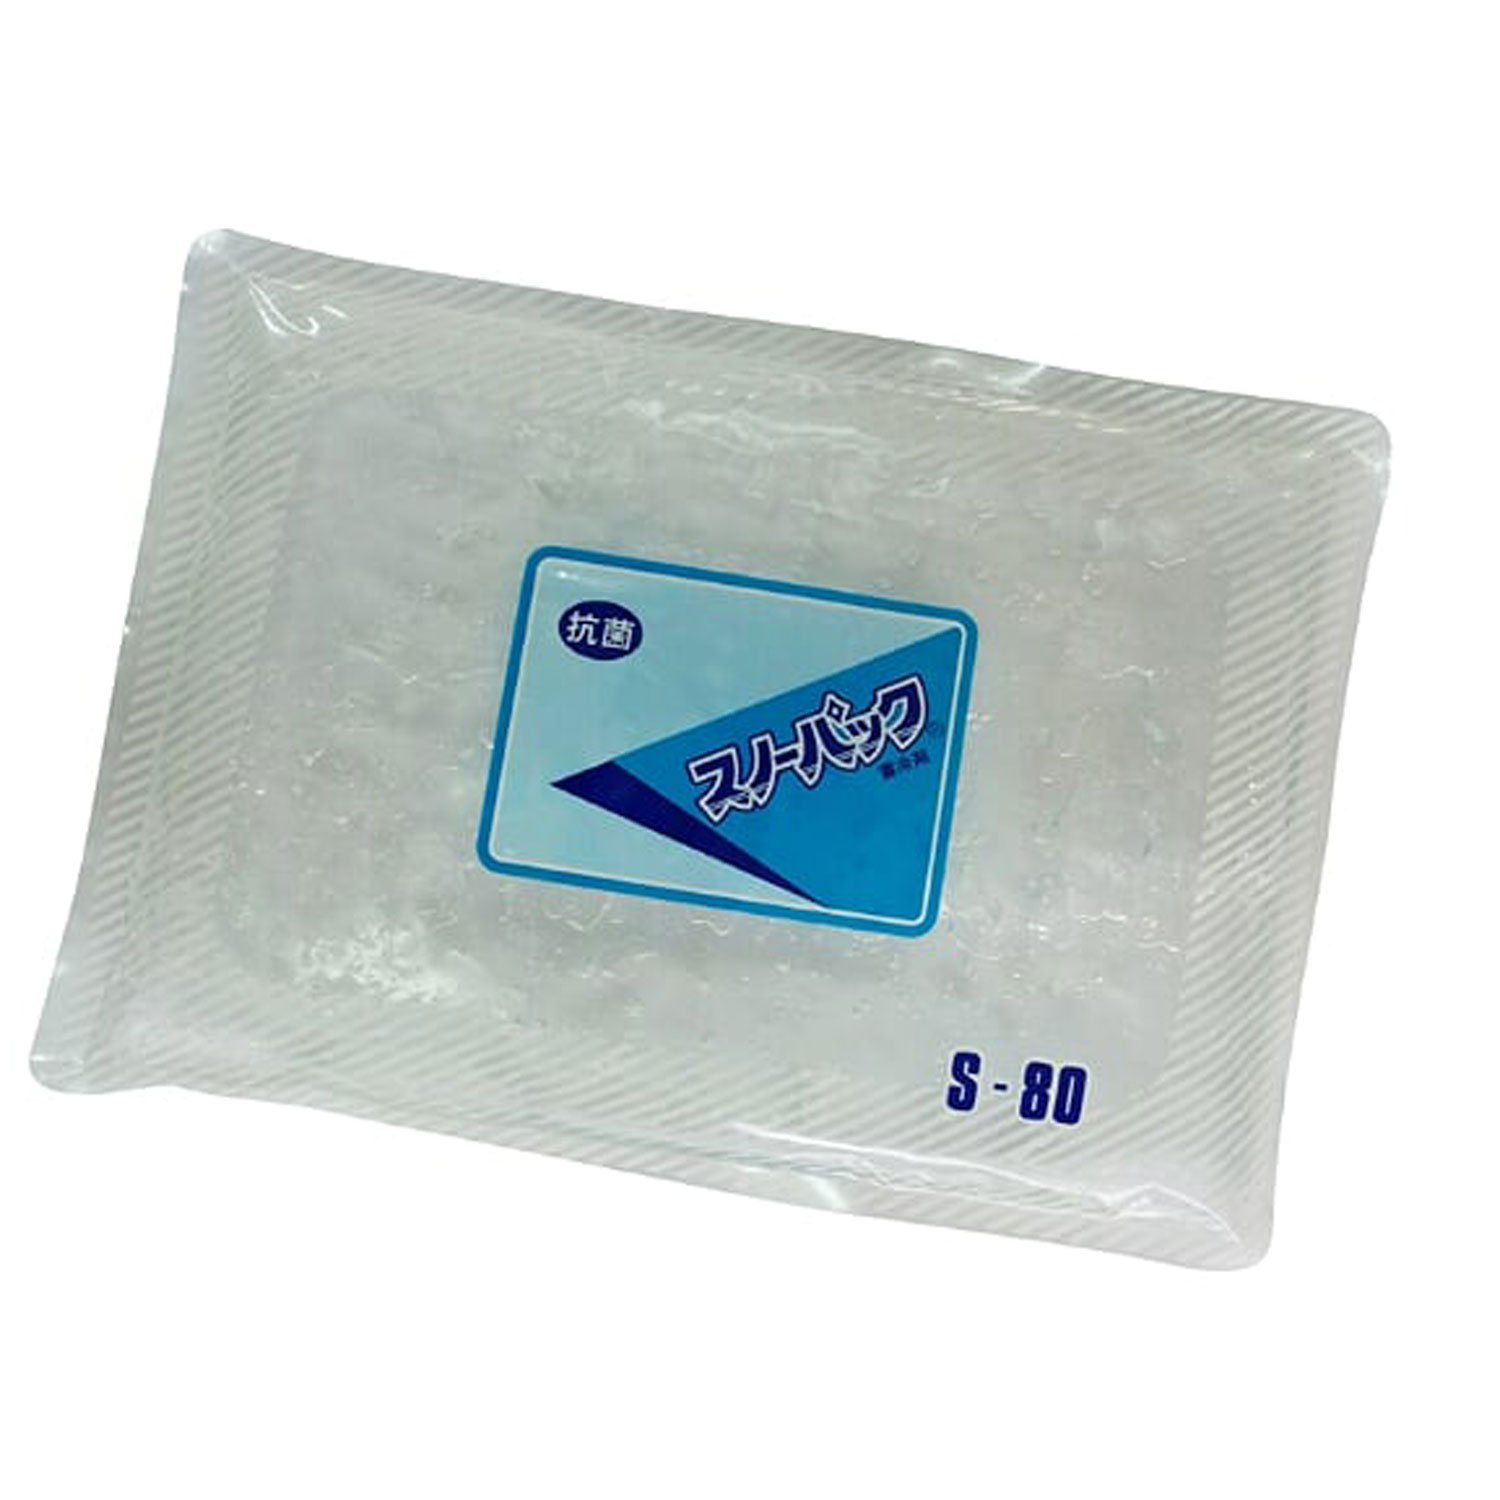  スノーパック S-80(抗菌) 三重化学工業 00252943